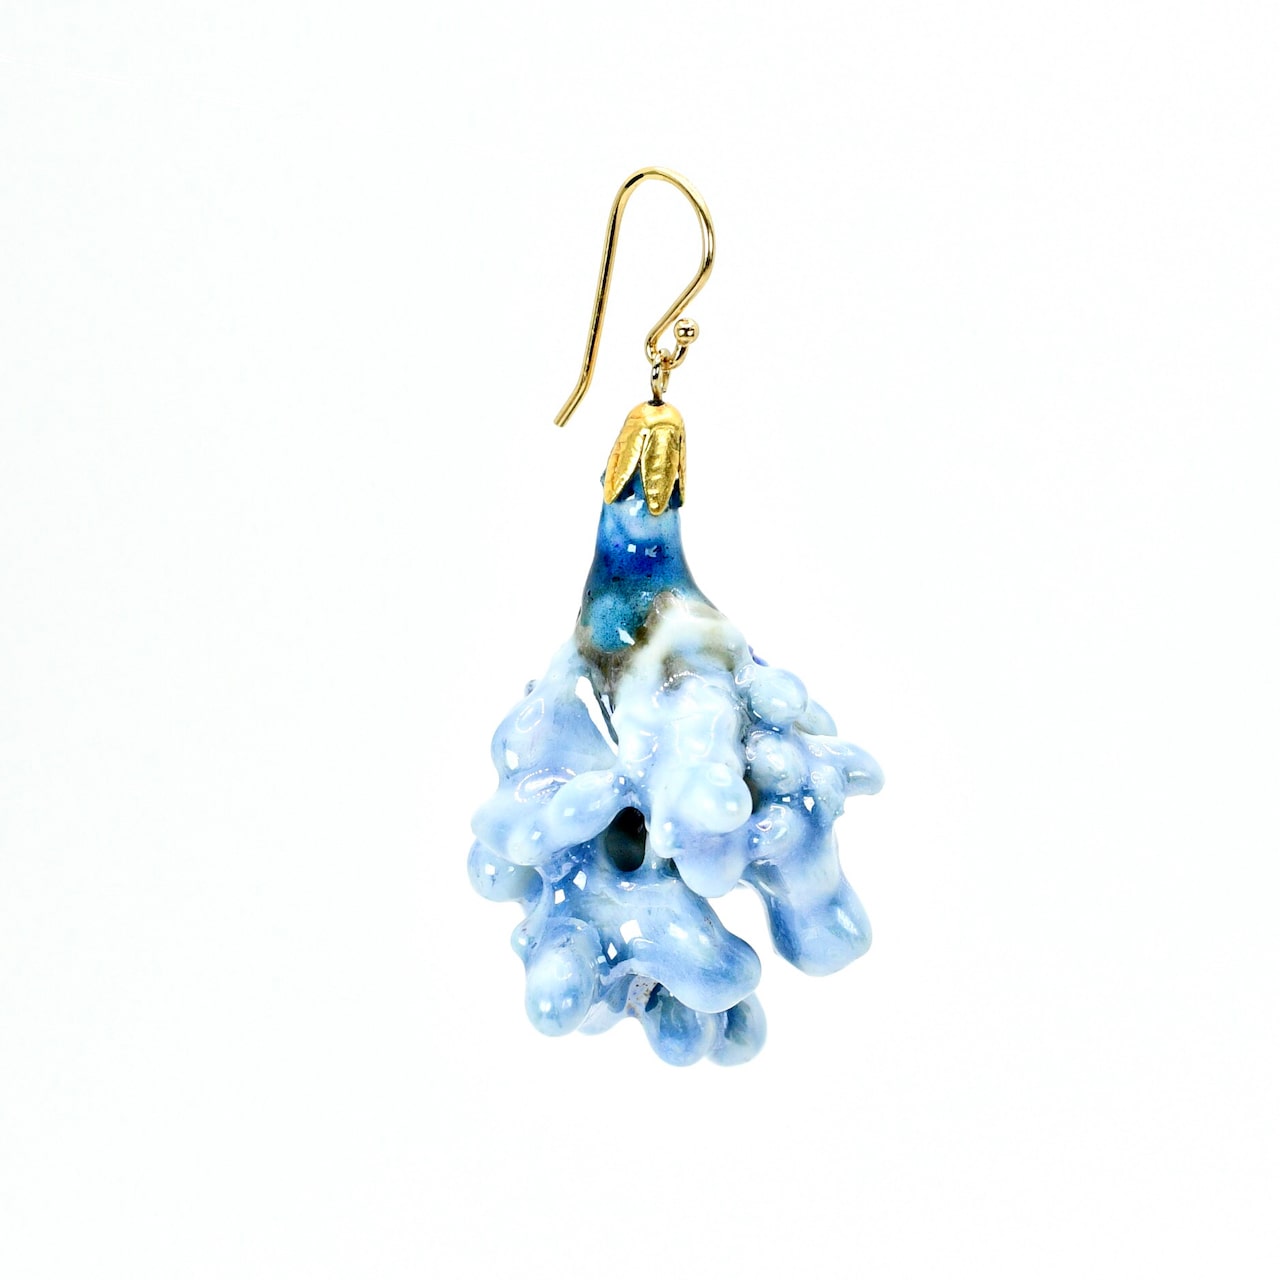 BLUE NANDINA I Real Flower in Porcelain Ceramic Mono Earring